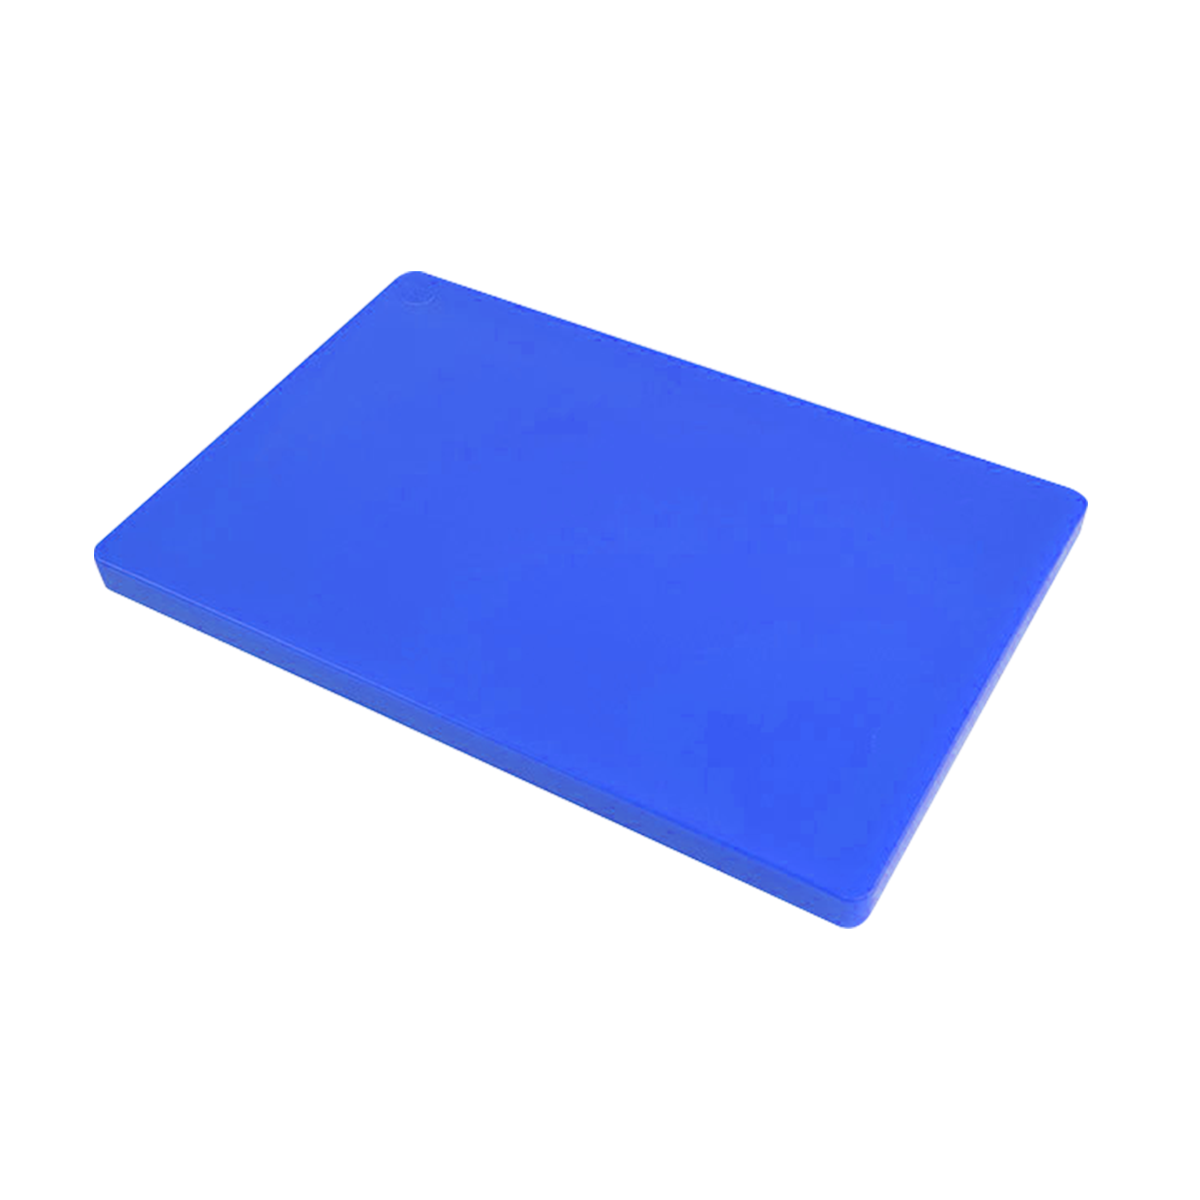 เขียงพลาสติก ทรงสี่เหลี่ยม ขนาด 30 x 50 x 3 ซม. สีน้ำเงิน